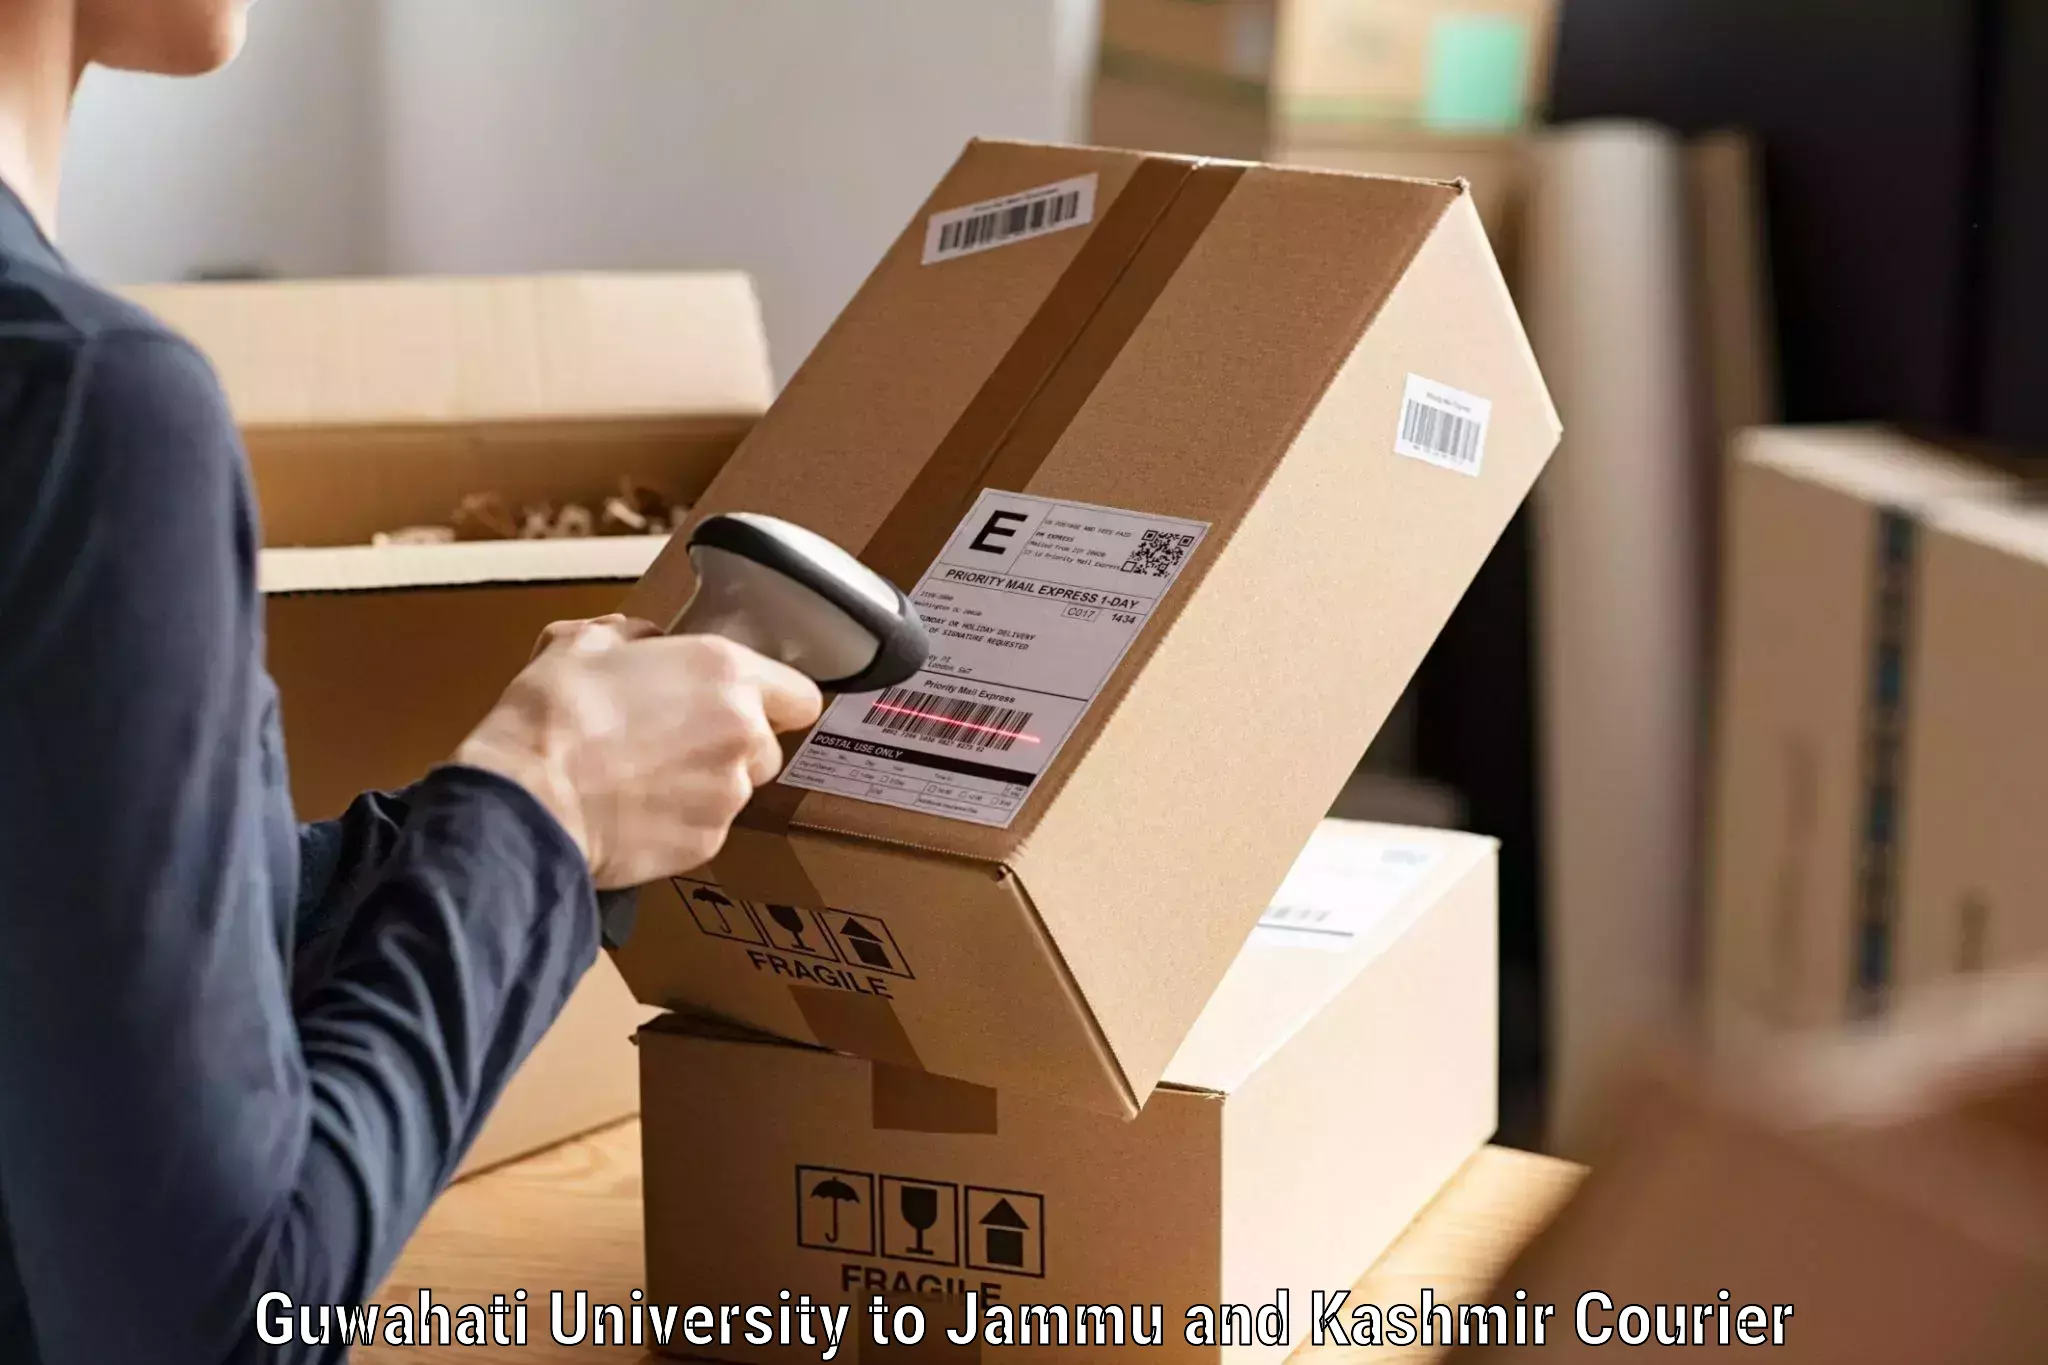 Premium courier services Guwahati University to Srinagar Kashmir